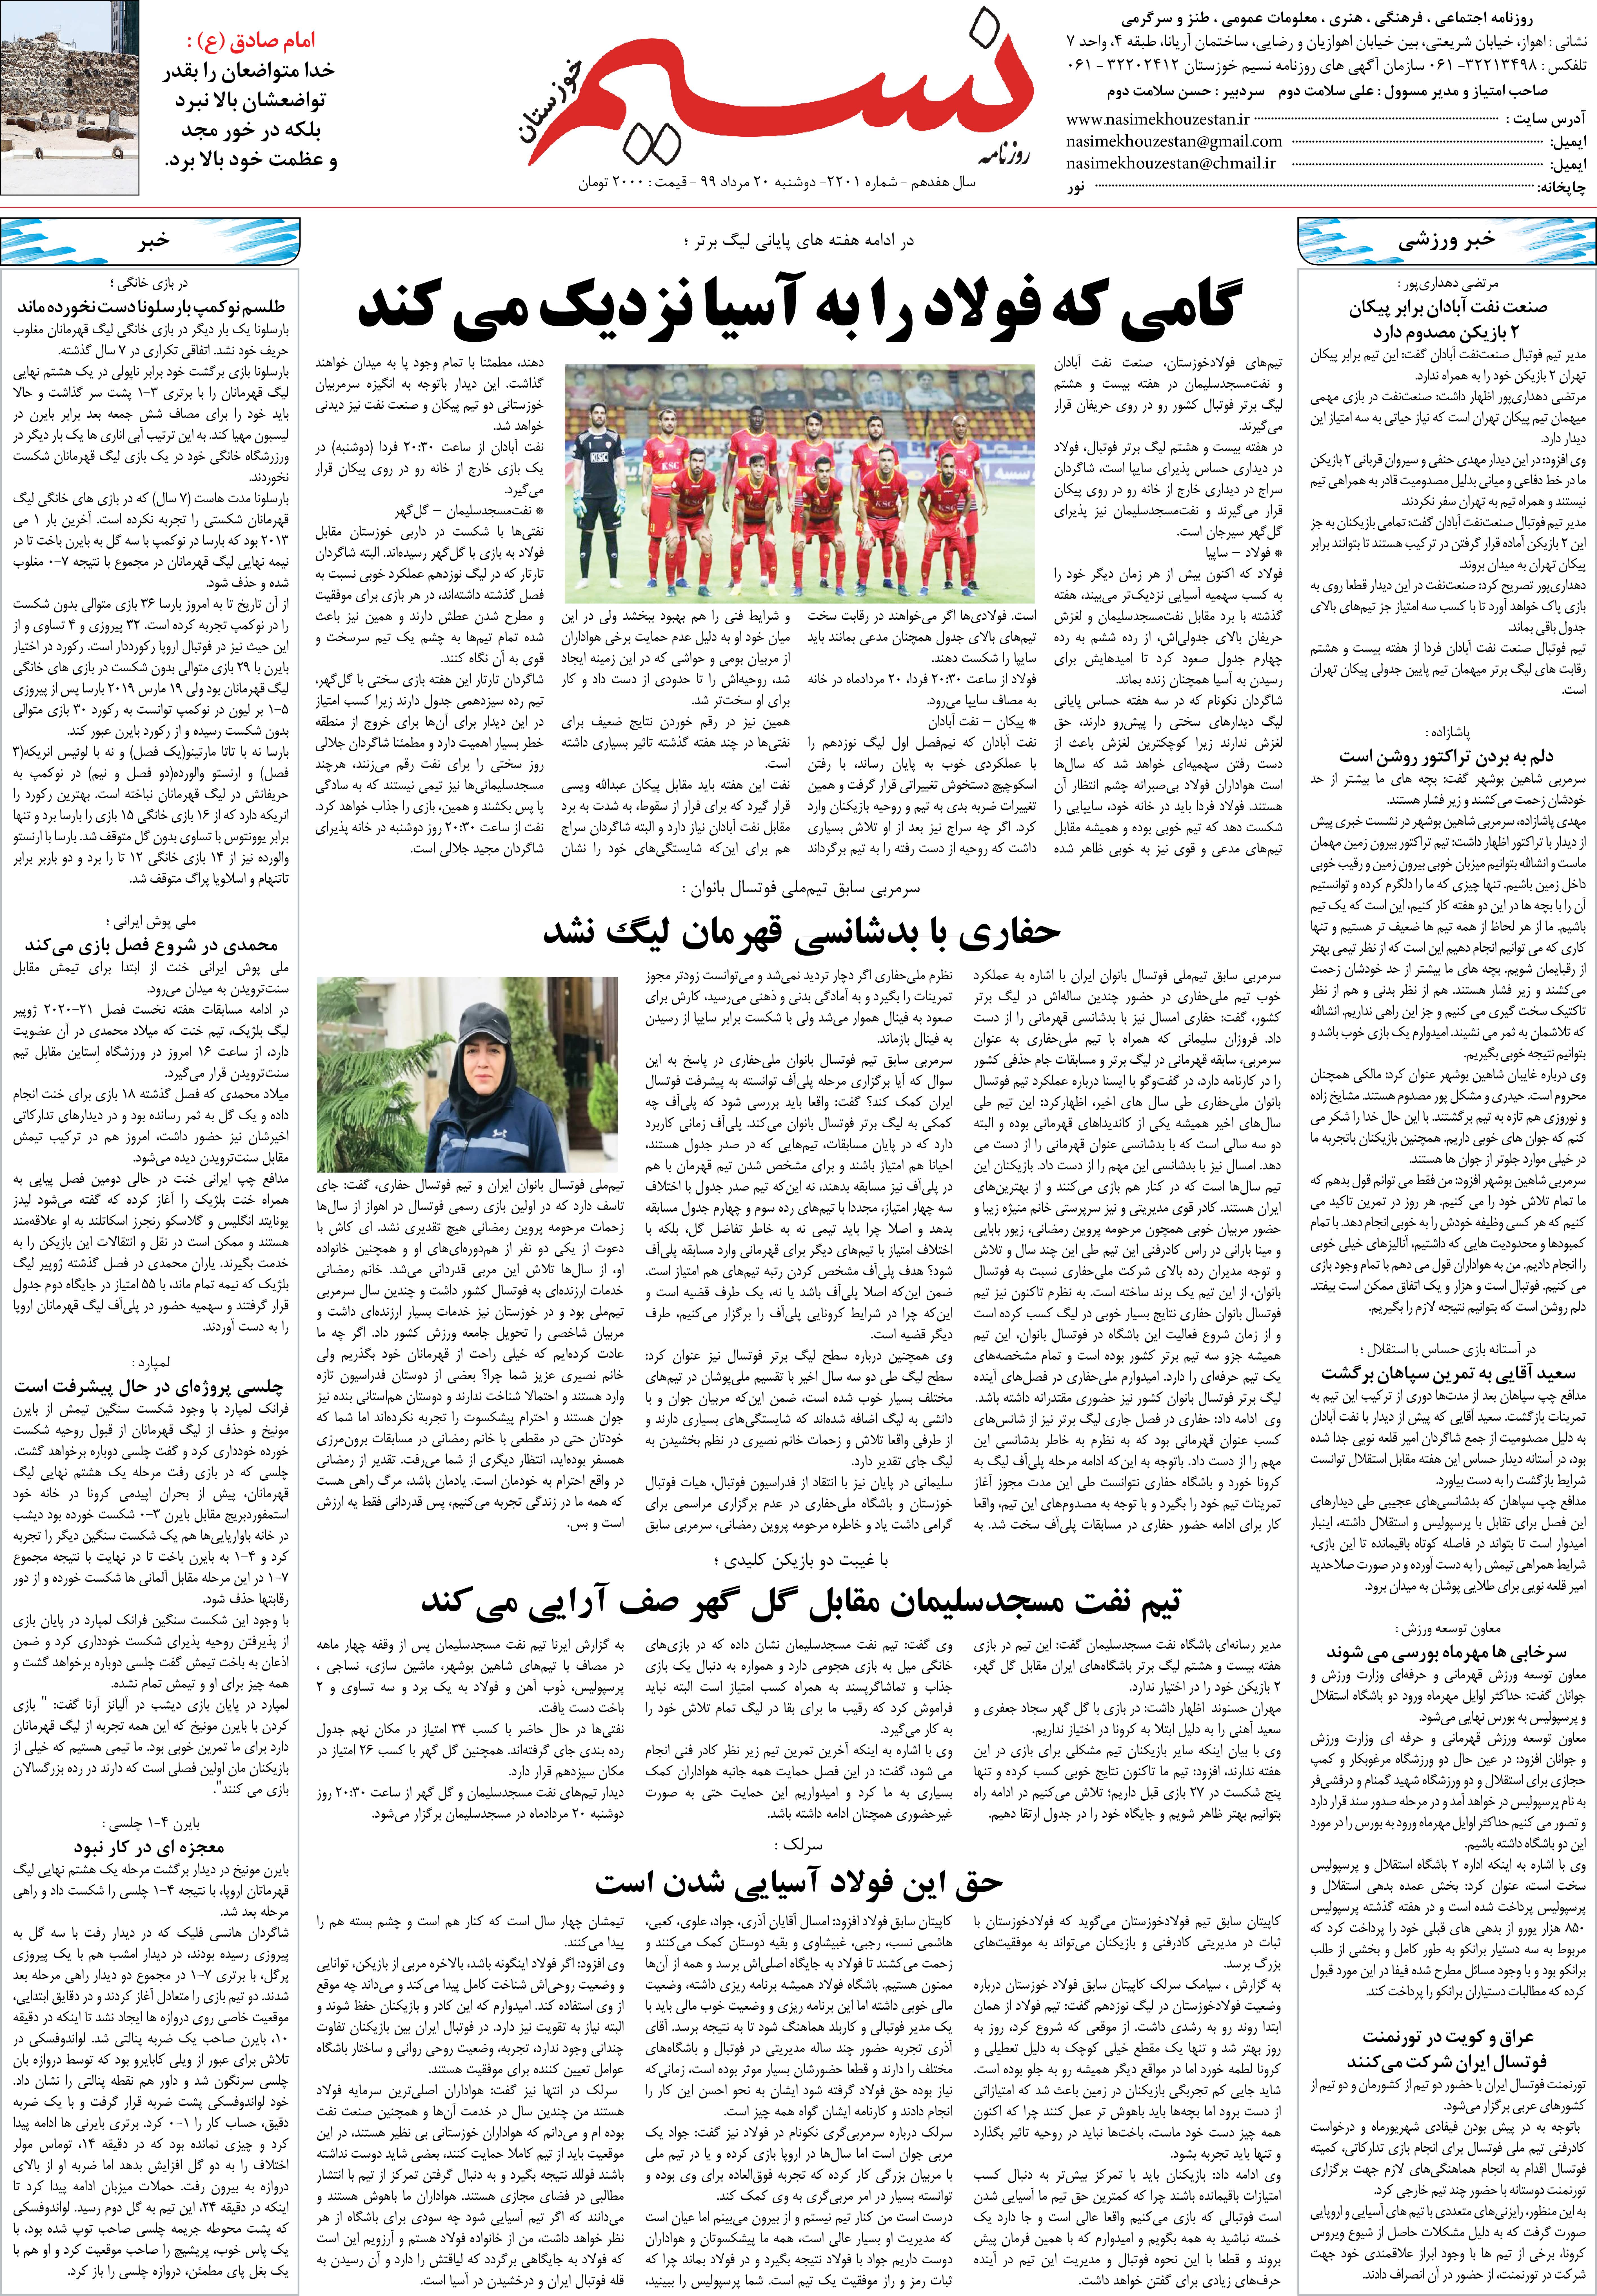 صفحه آخر روزنامه نسیم شماره 2201